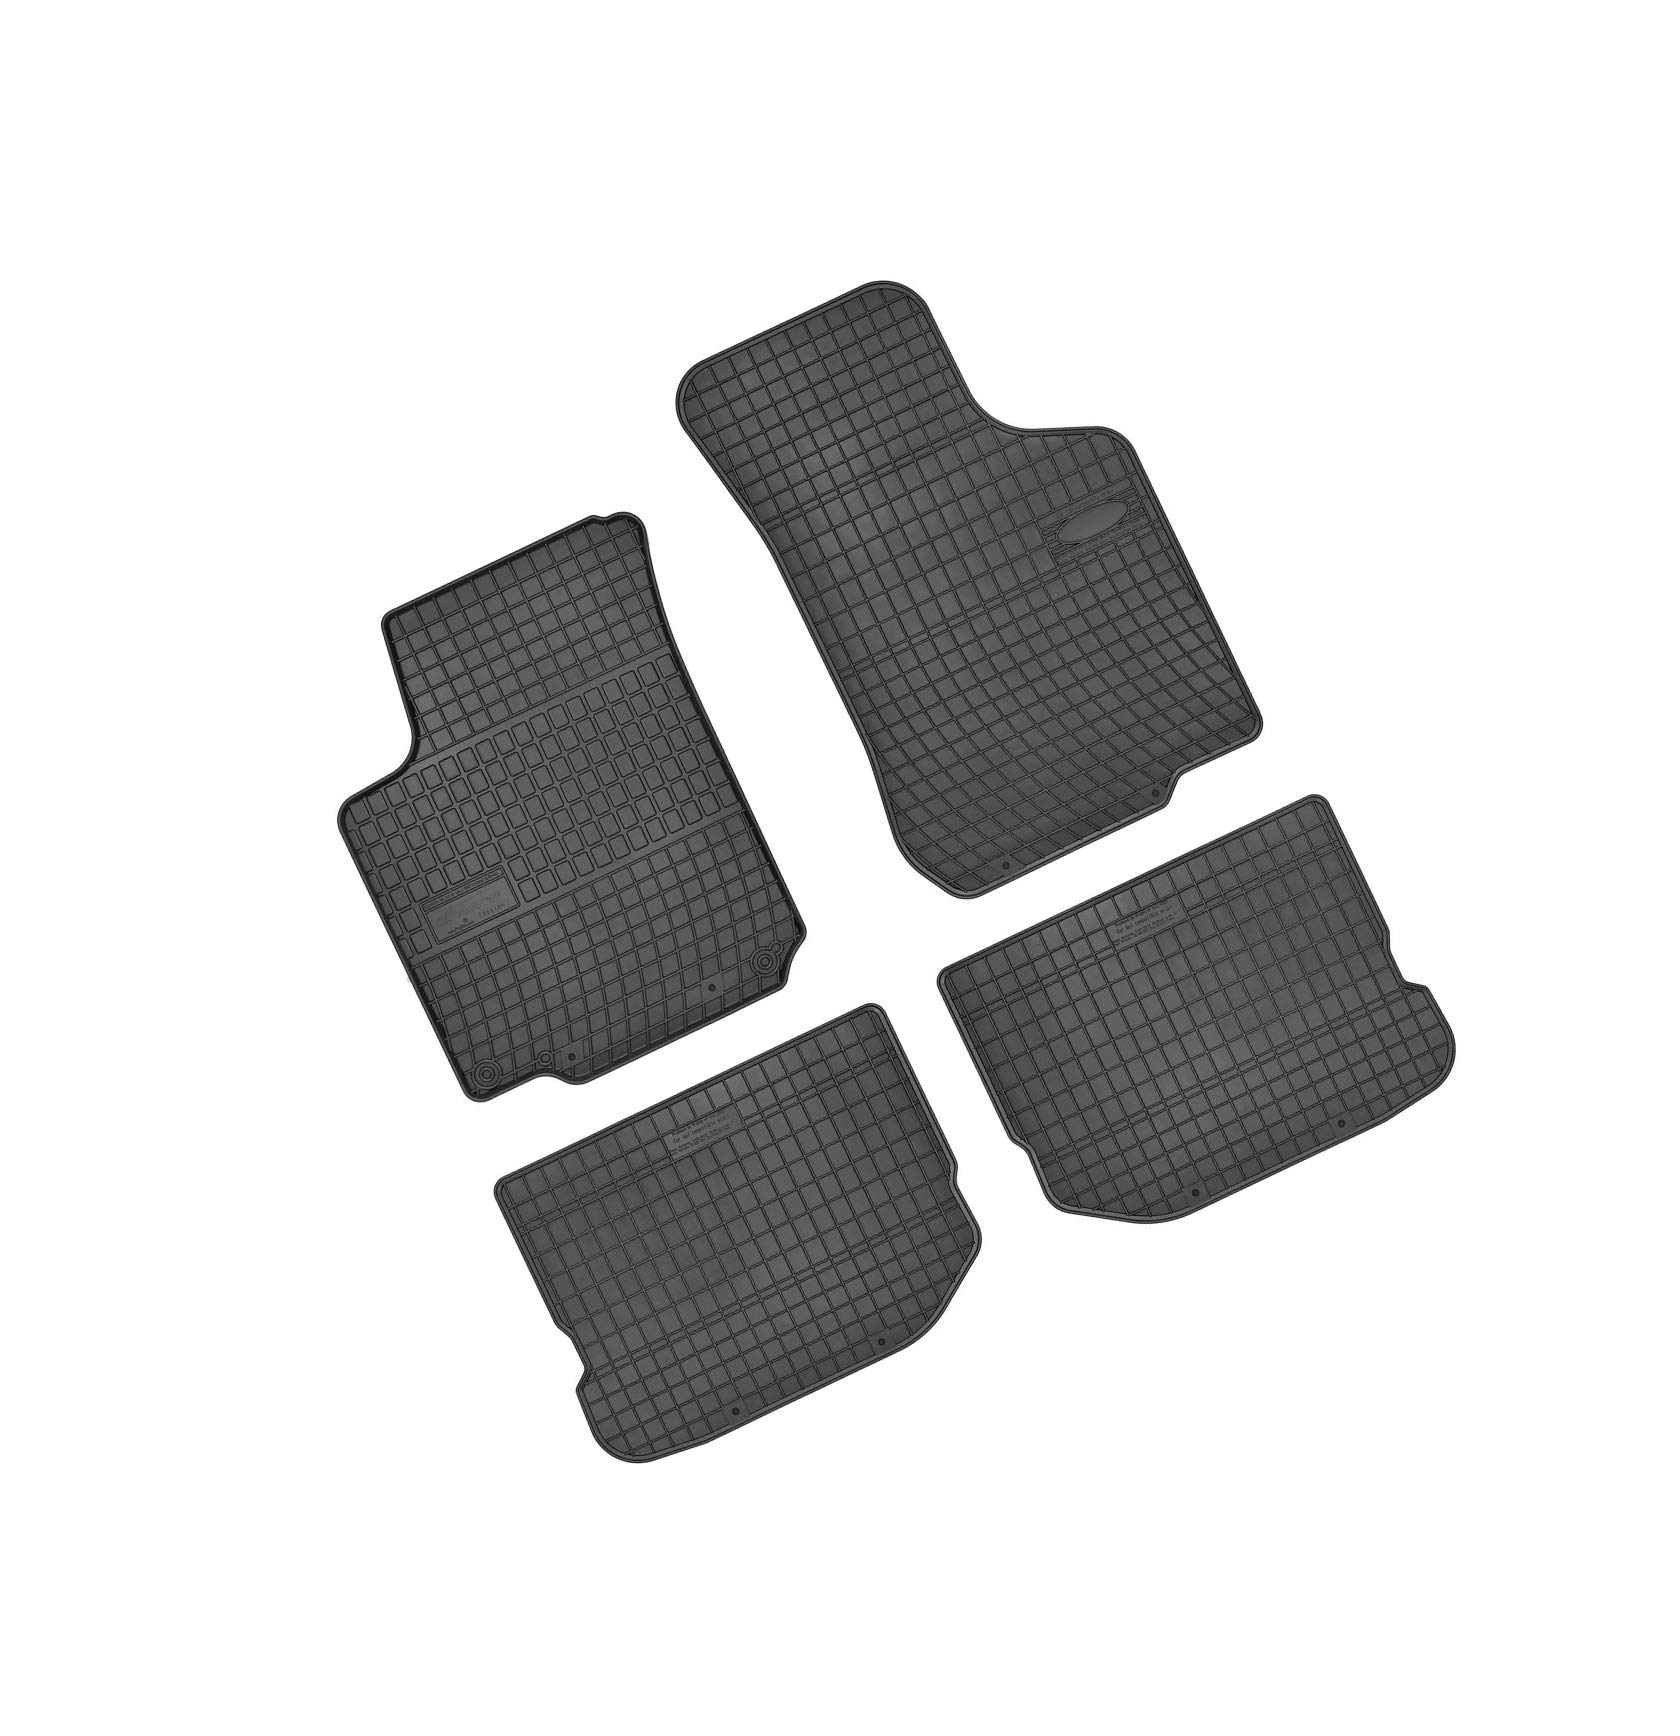 Bär-AfC SK03503 Gummimatten Auto Fußmatten Schwarz, Erhöhter Rand, Set 4-teilig, Passgenau für Modell Siehe Details